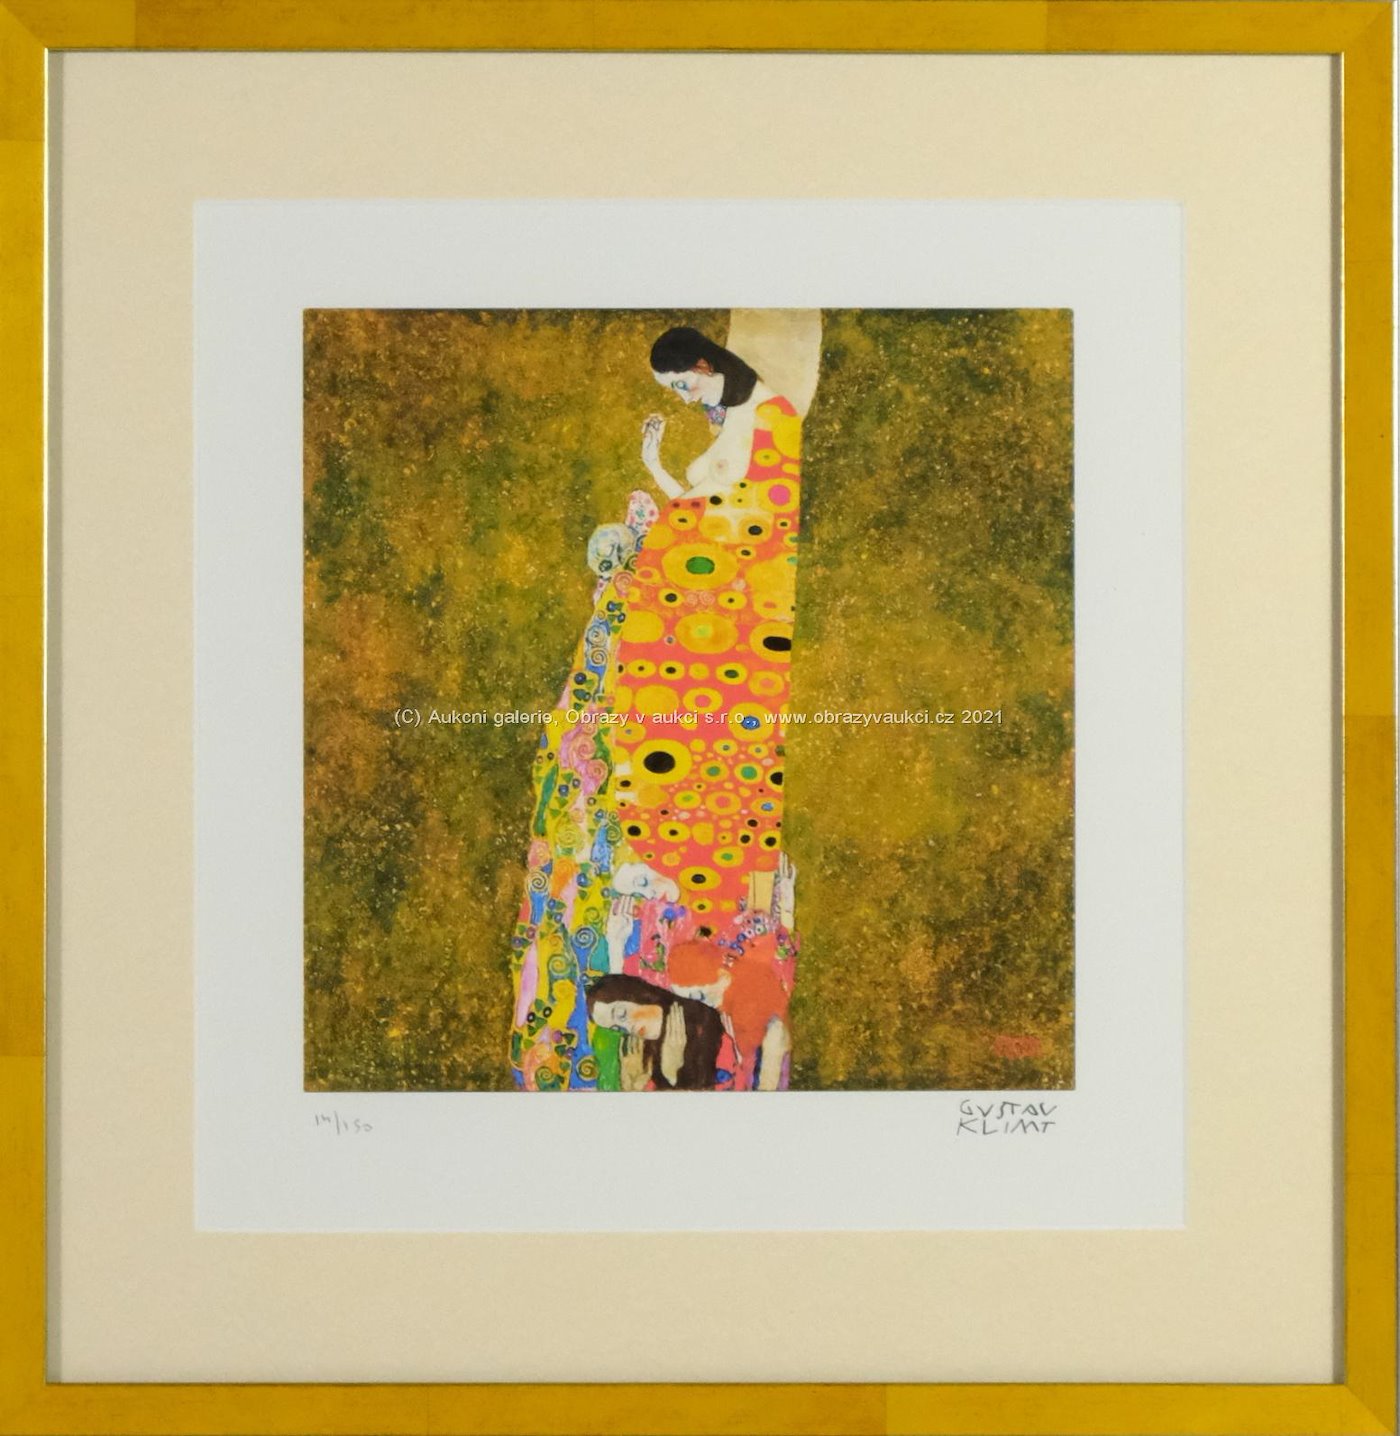 Gustav Klimt - Die Hoffnung II